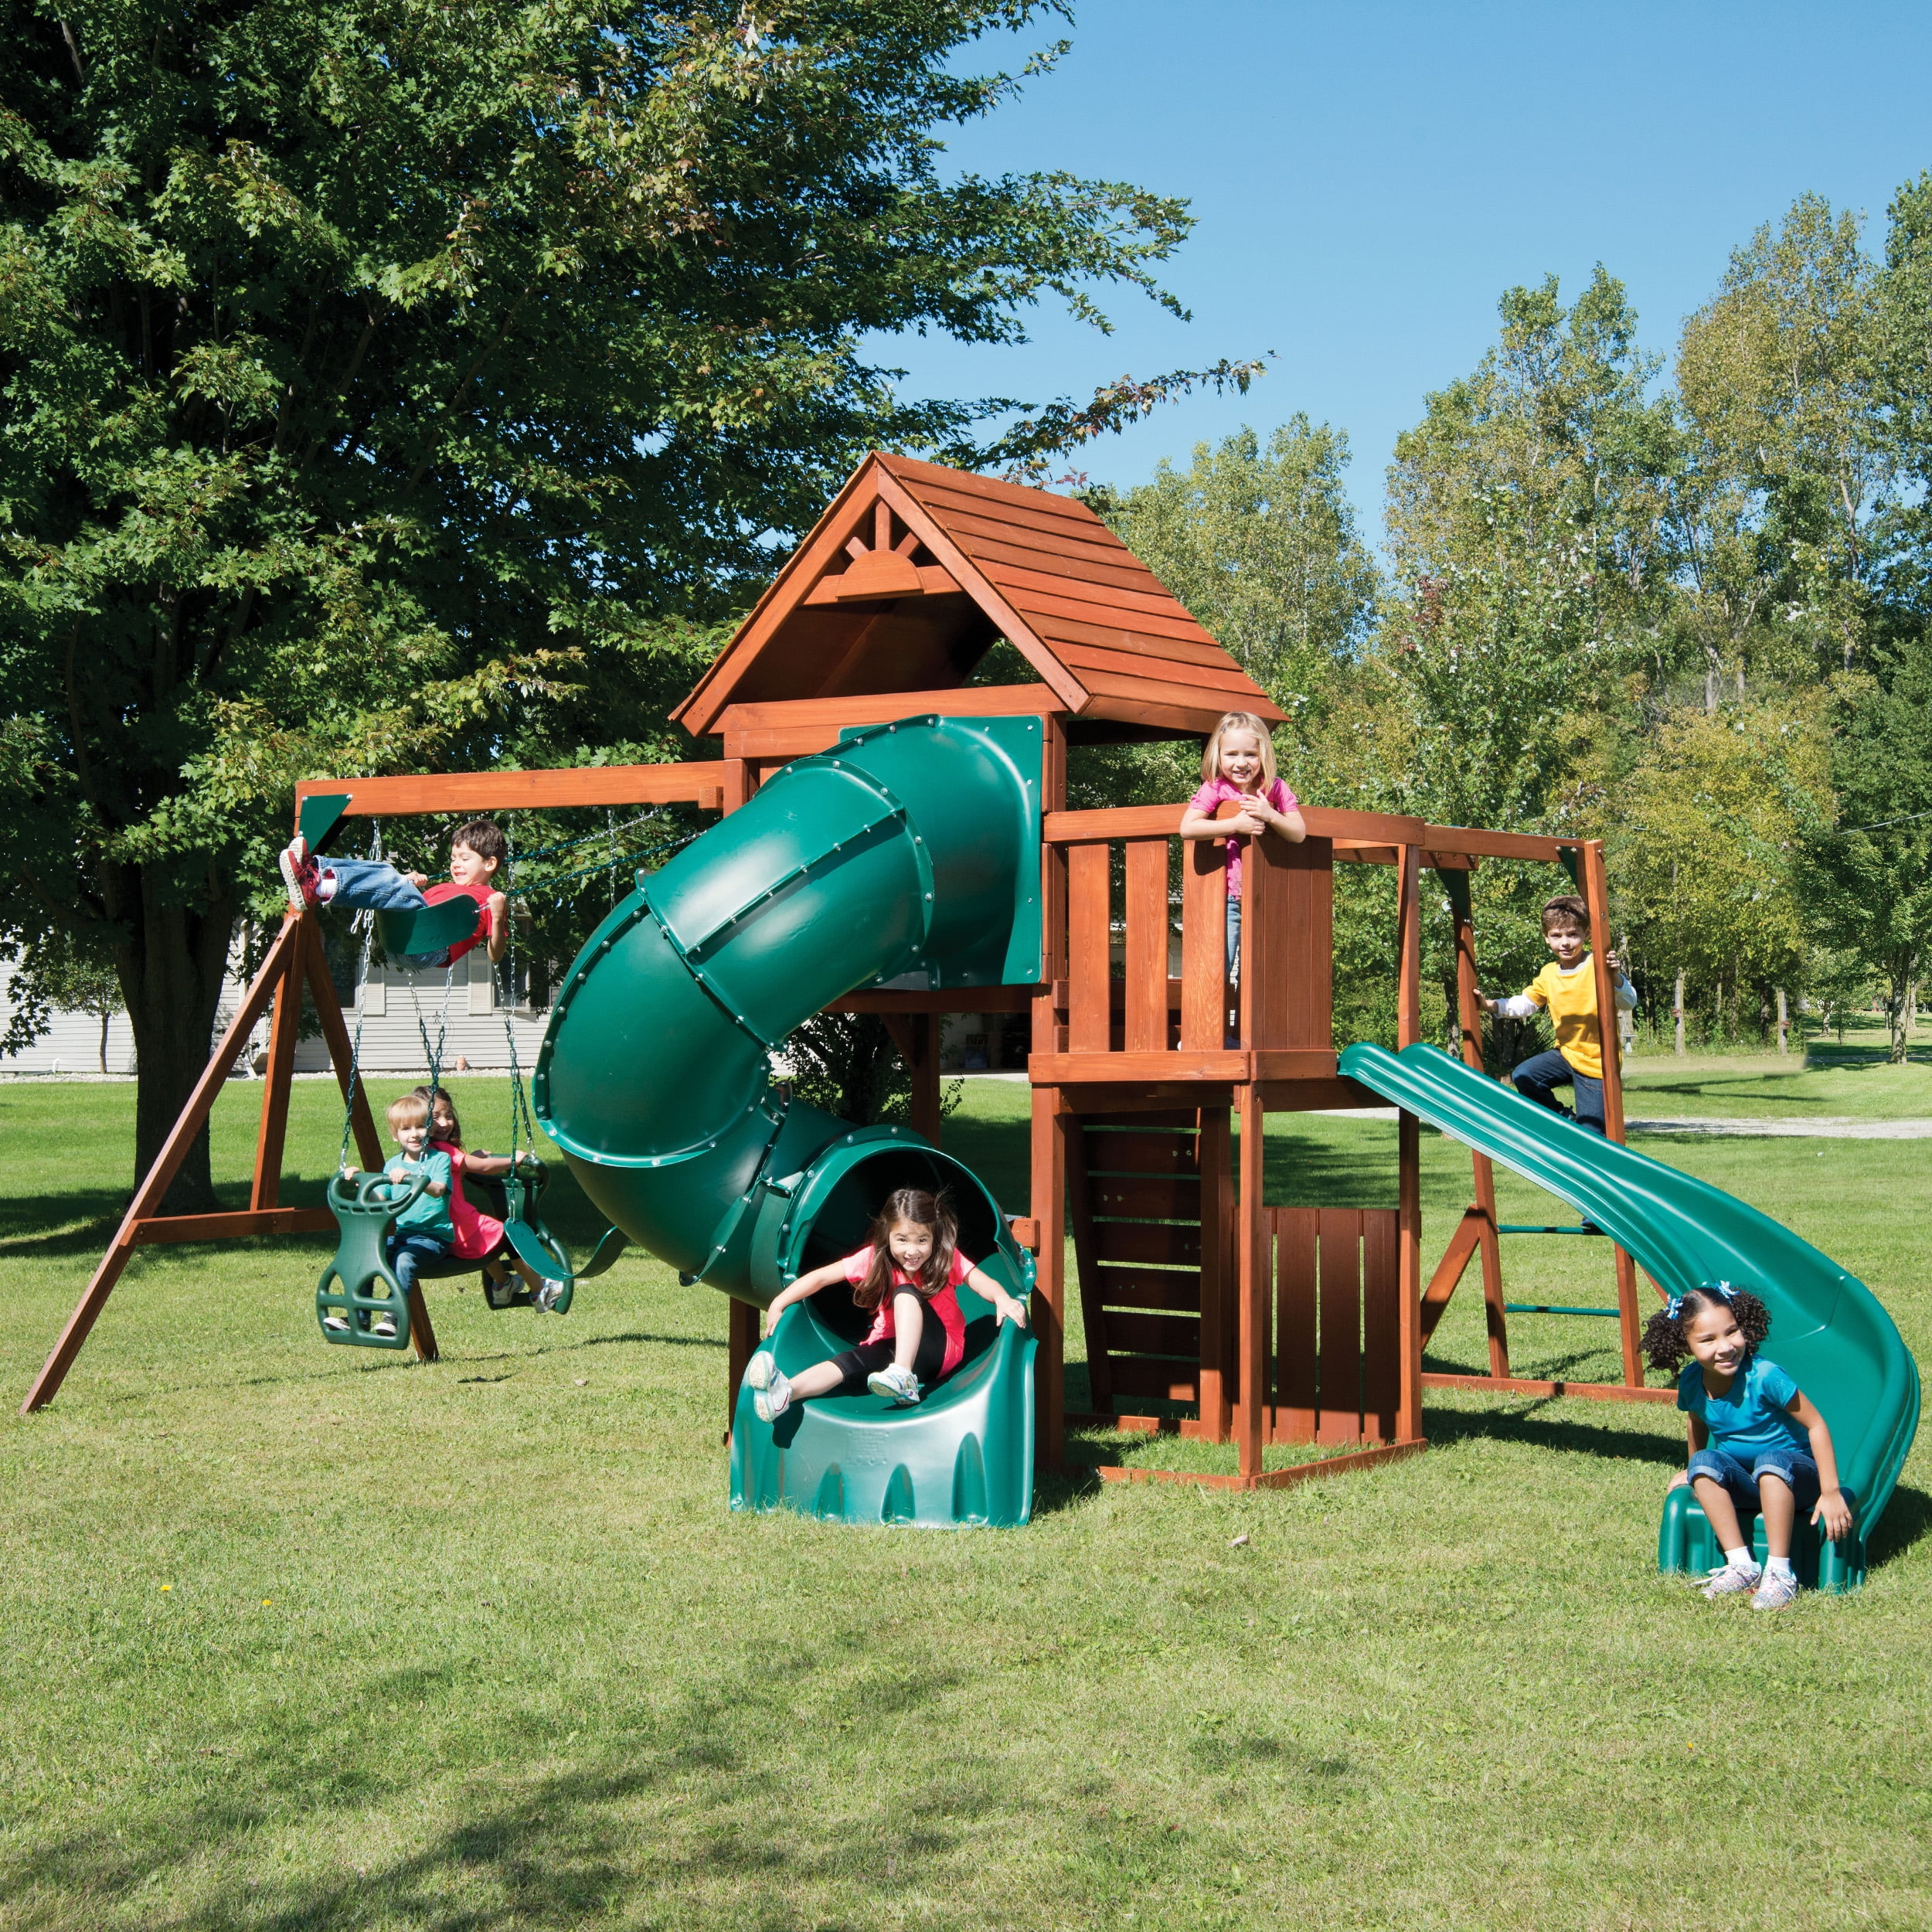 115 Swing Set For Backyard Playground Slide Fun Playset Outdoor Toddler Kid US U 